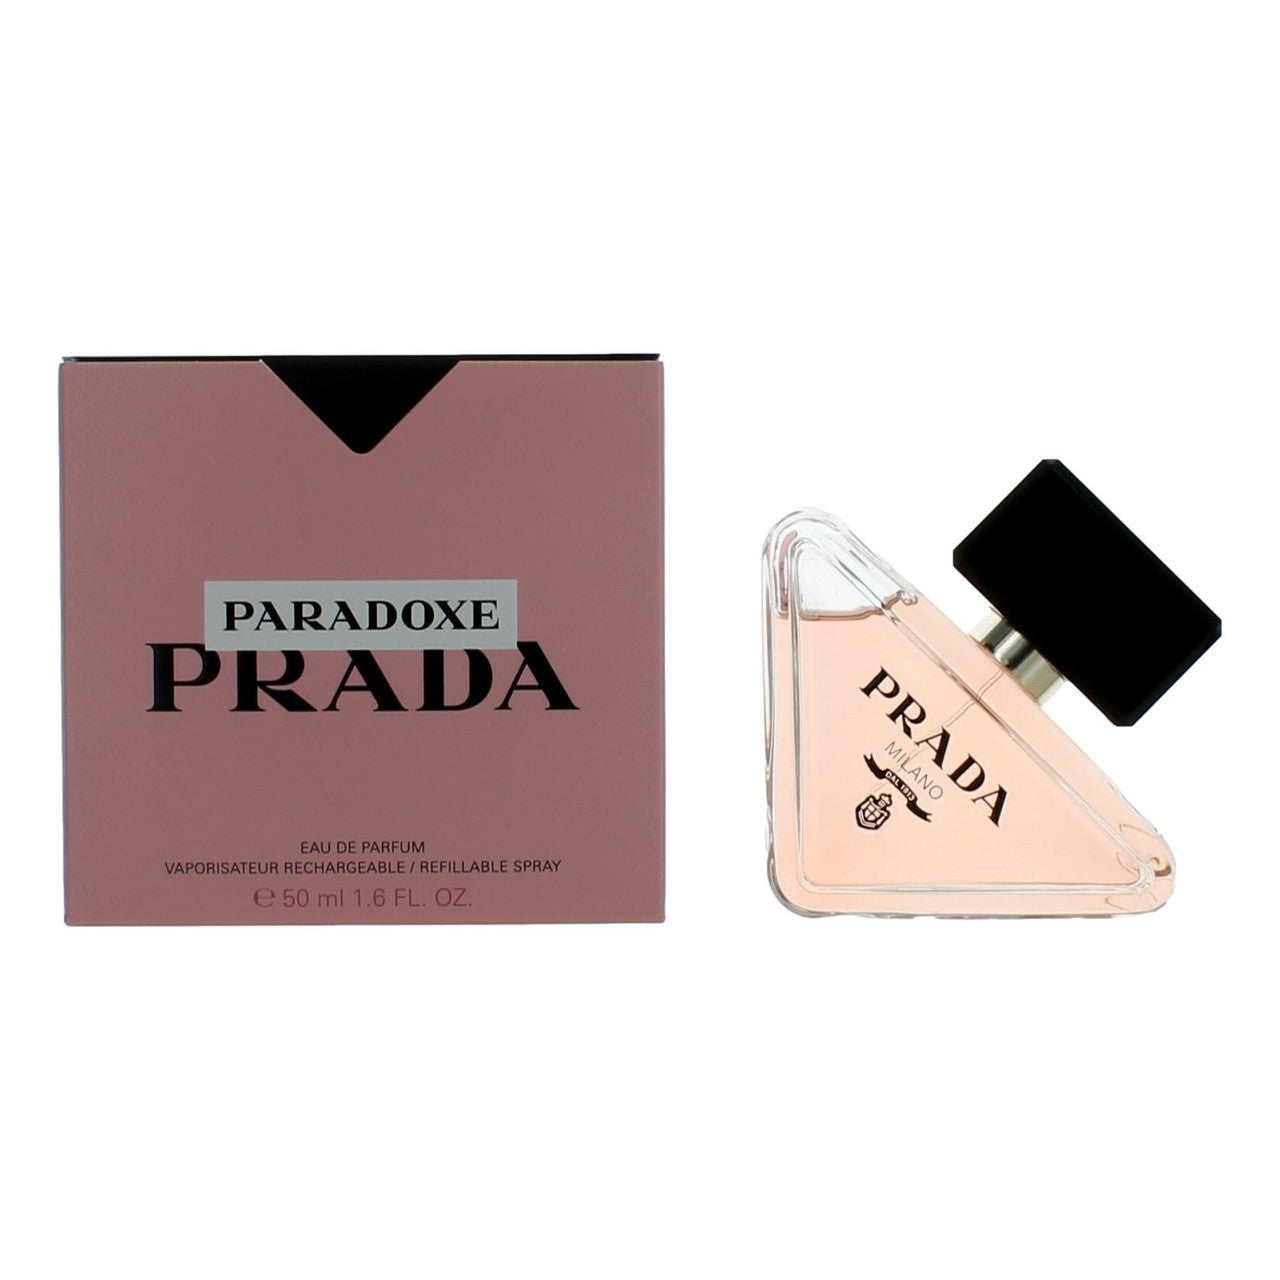 Prada Paradoxe by Prada, 1.6 oz EDP Spray